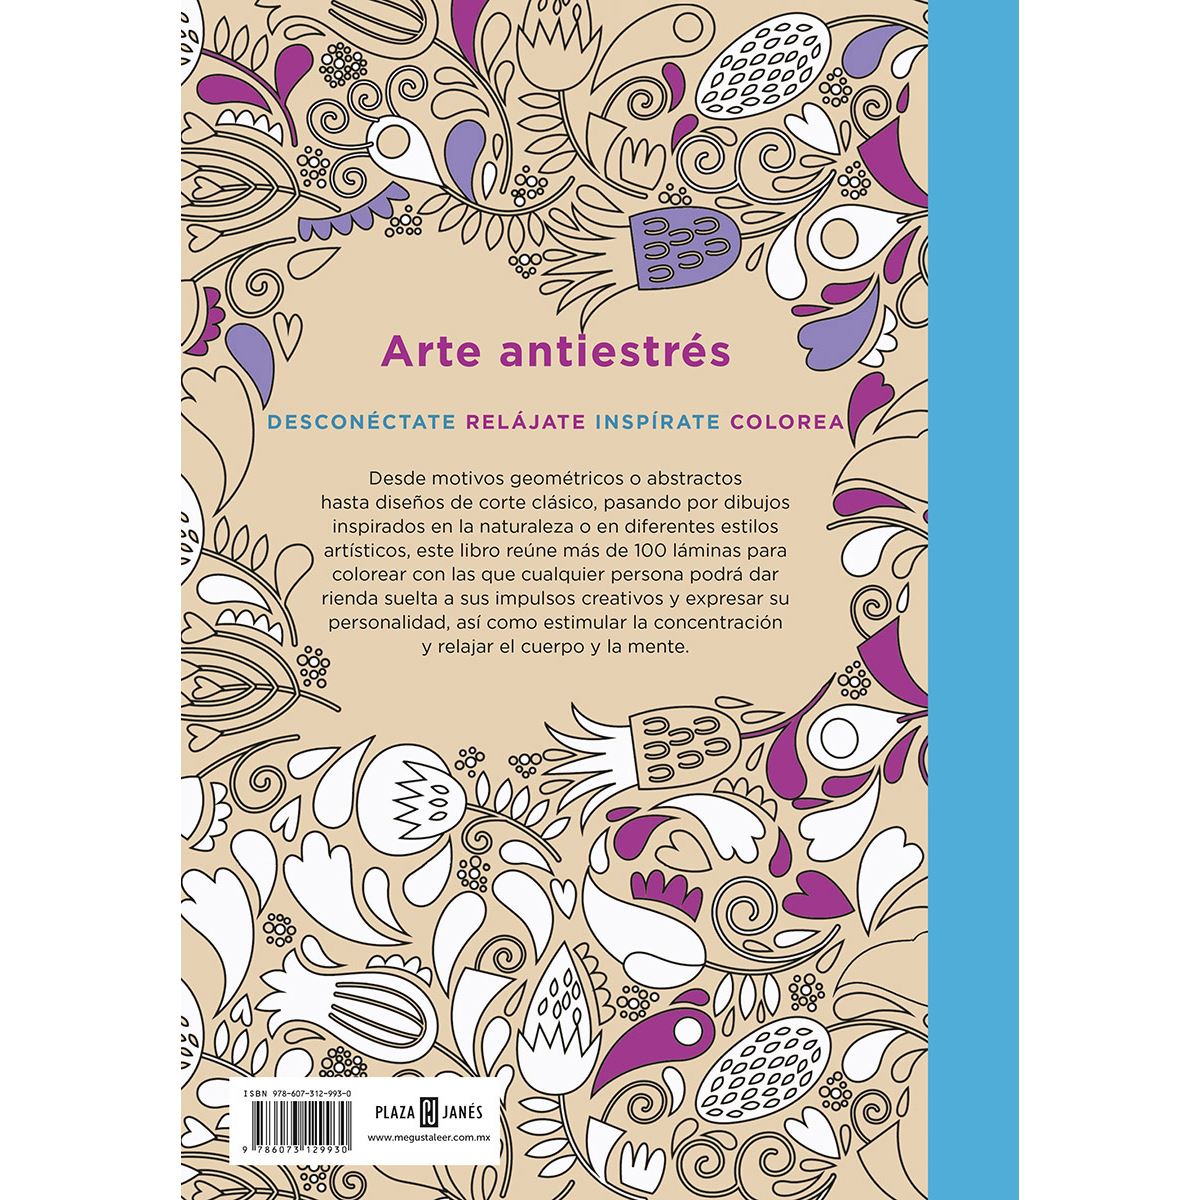 Arte Antiestrés: Cosas bonitas. 100 láminas para colorear (Spanish Edition)  - Varios Autores: 9788401347429 - AbeBooks